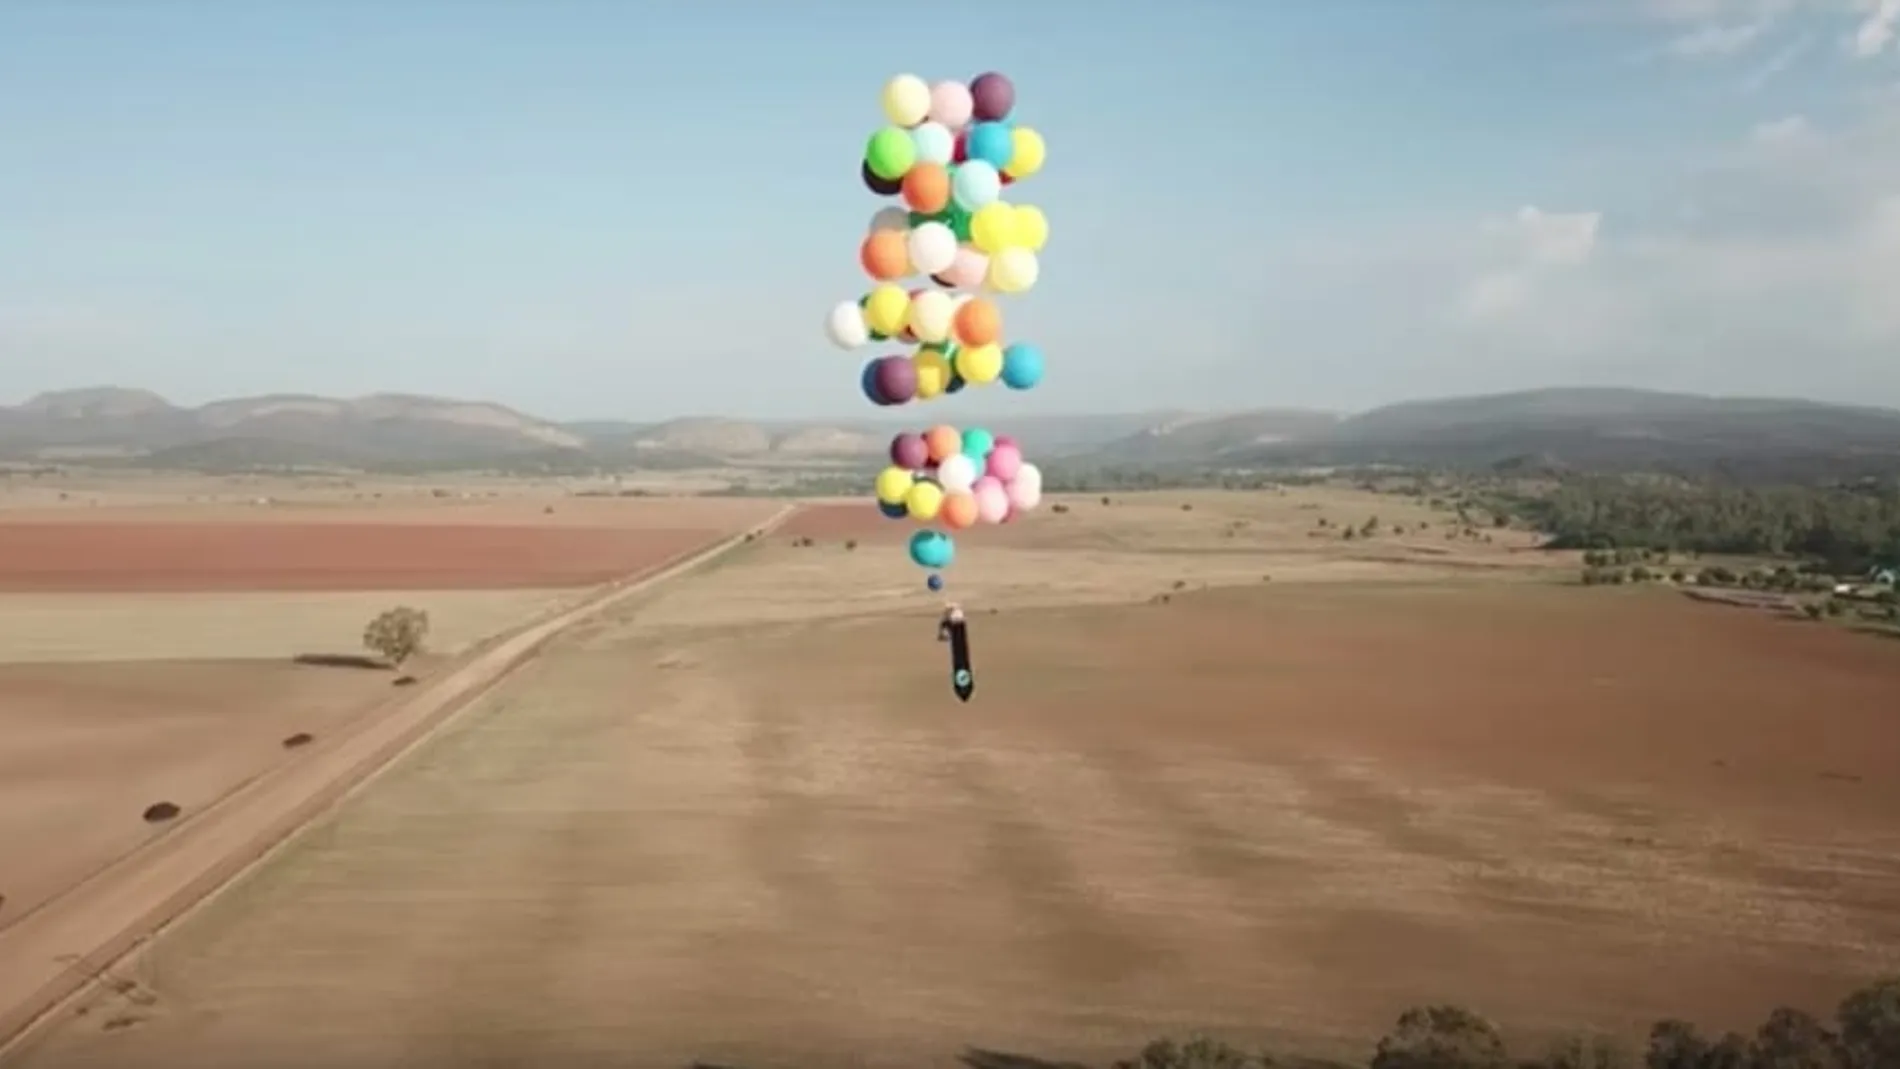 El vuelo fue posible gracias a 100 globos inflados con helio